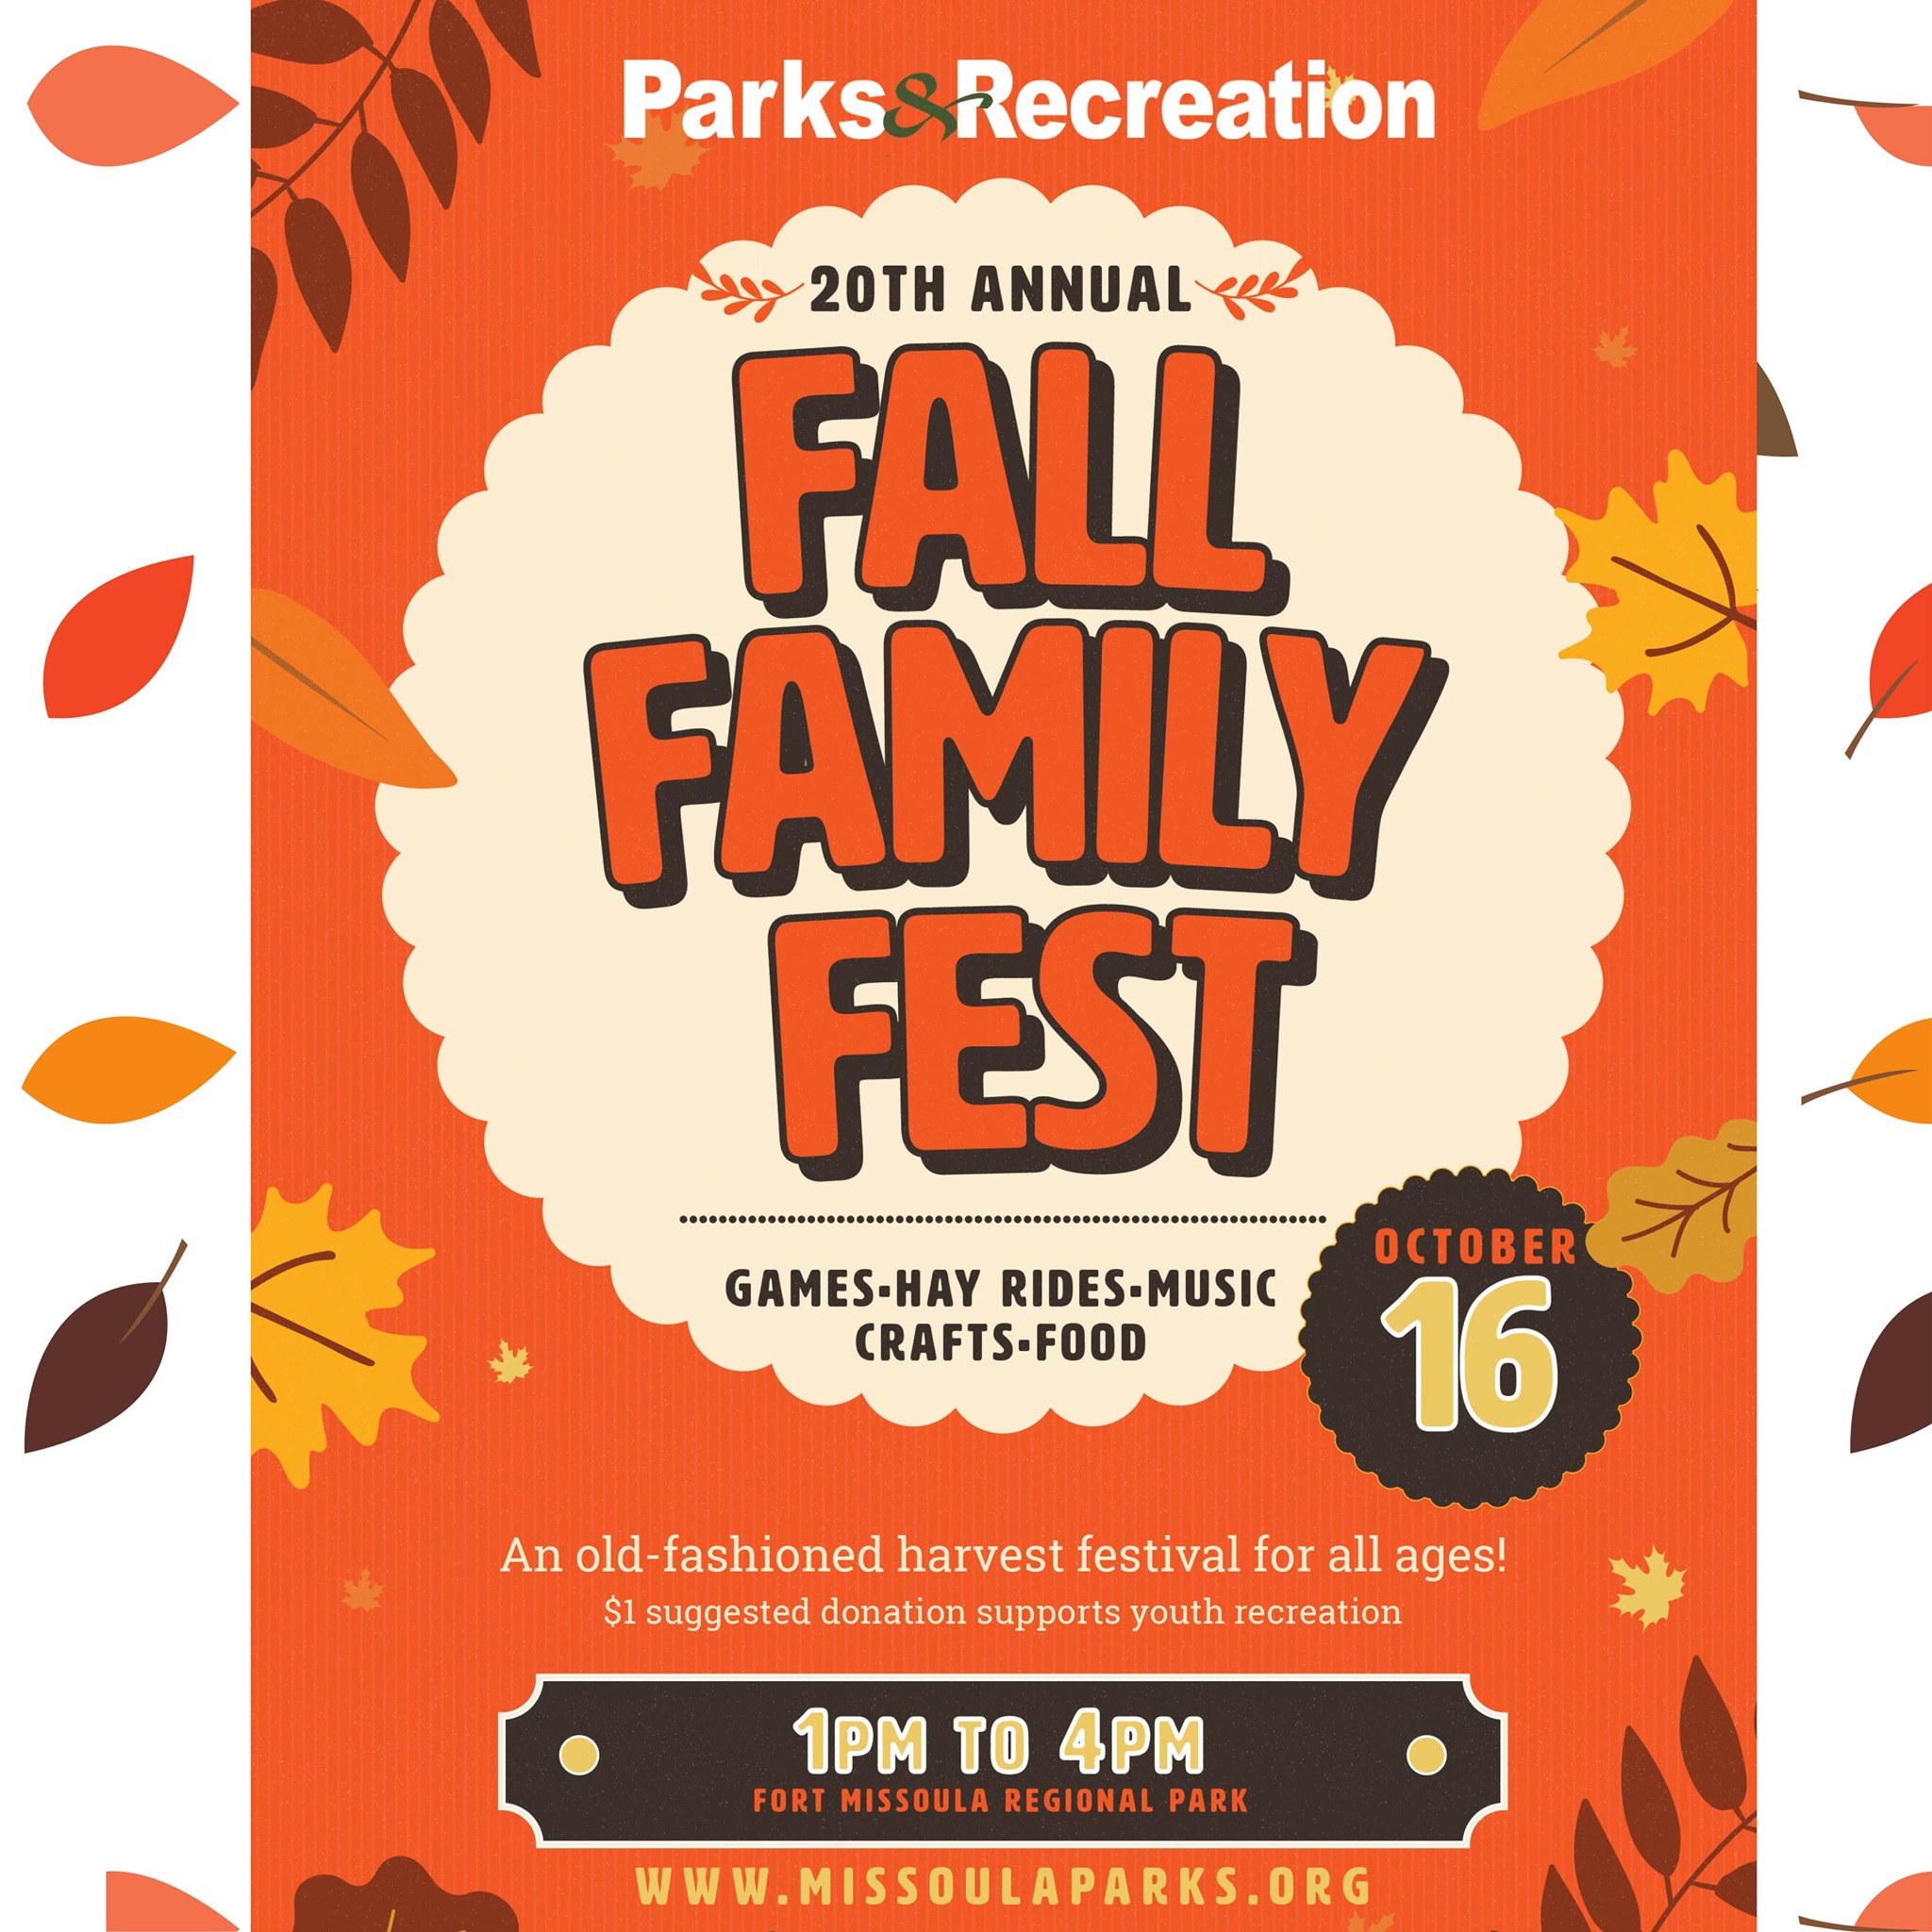 Fall Family Fest at Fort Missoula Regional Park